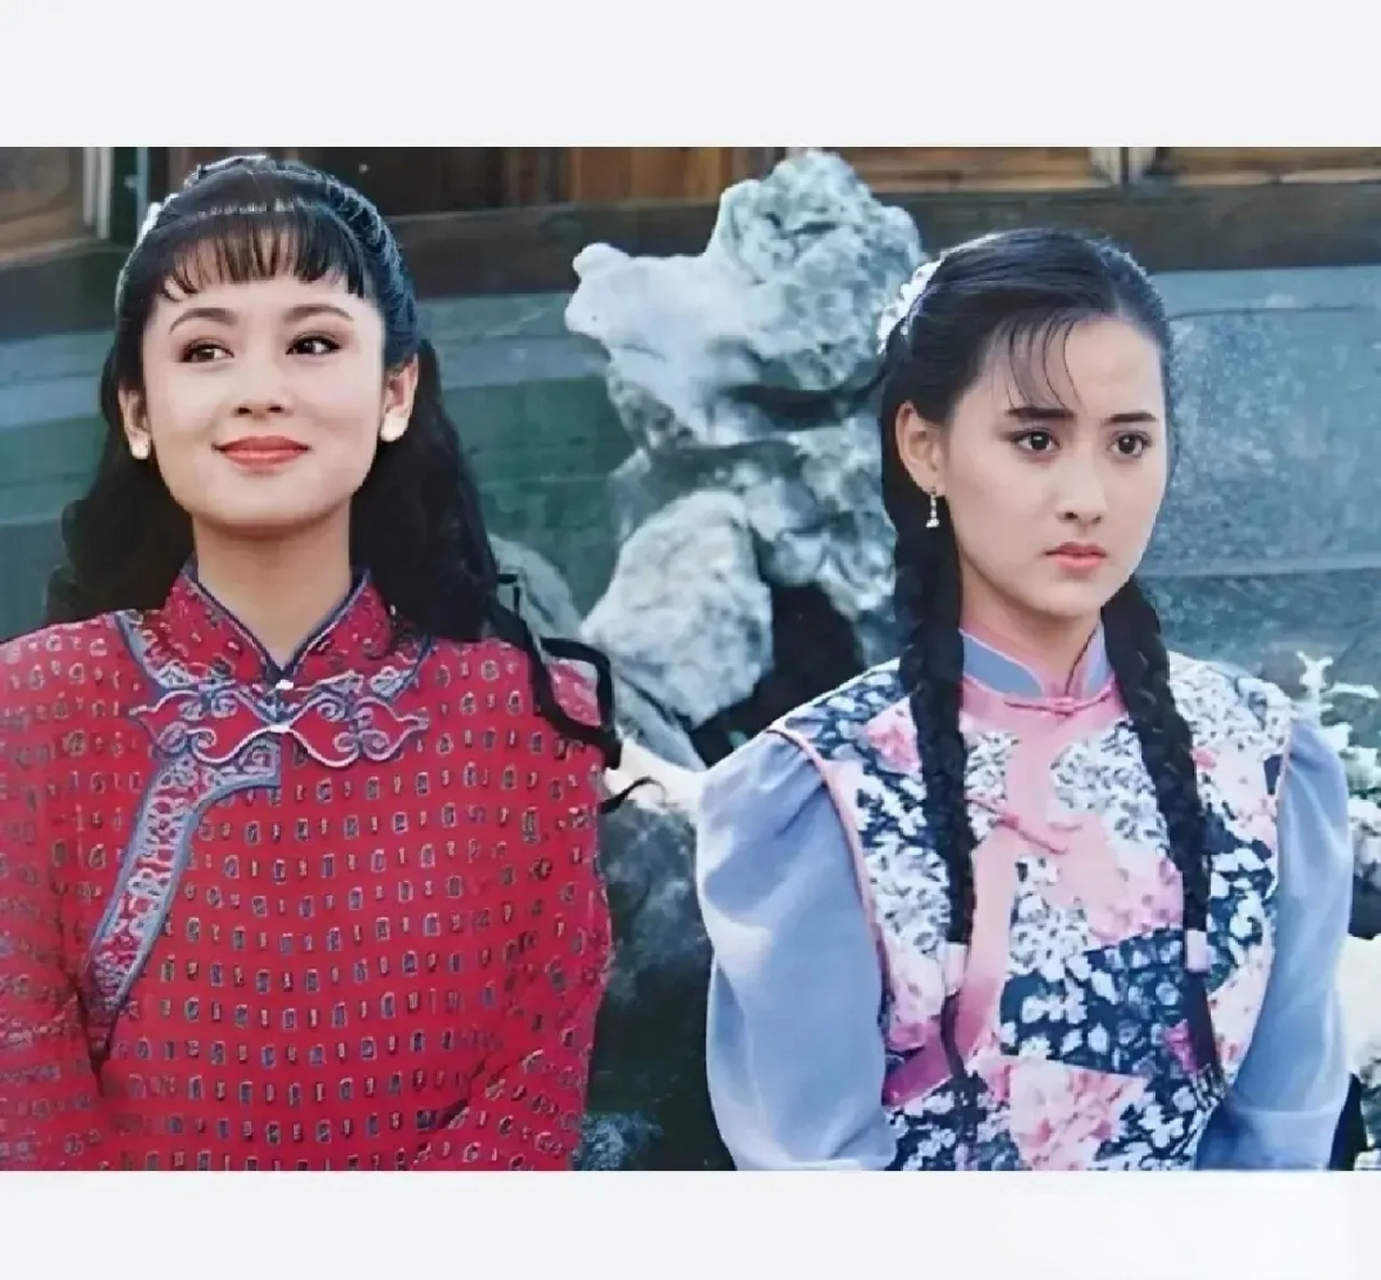 这是陈红和陈德容年轻时期的同框照片,当时她们正处于事业的巅峰期